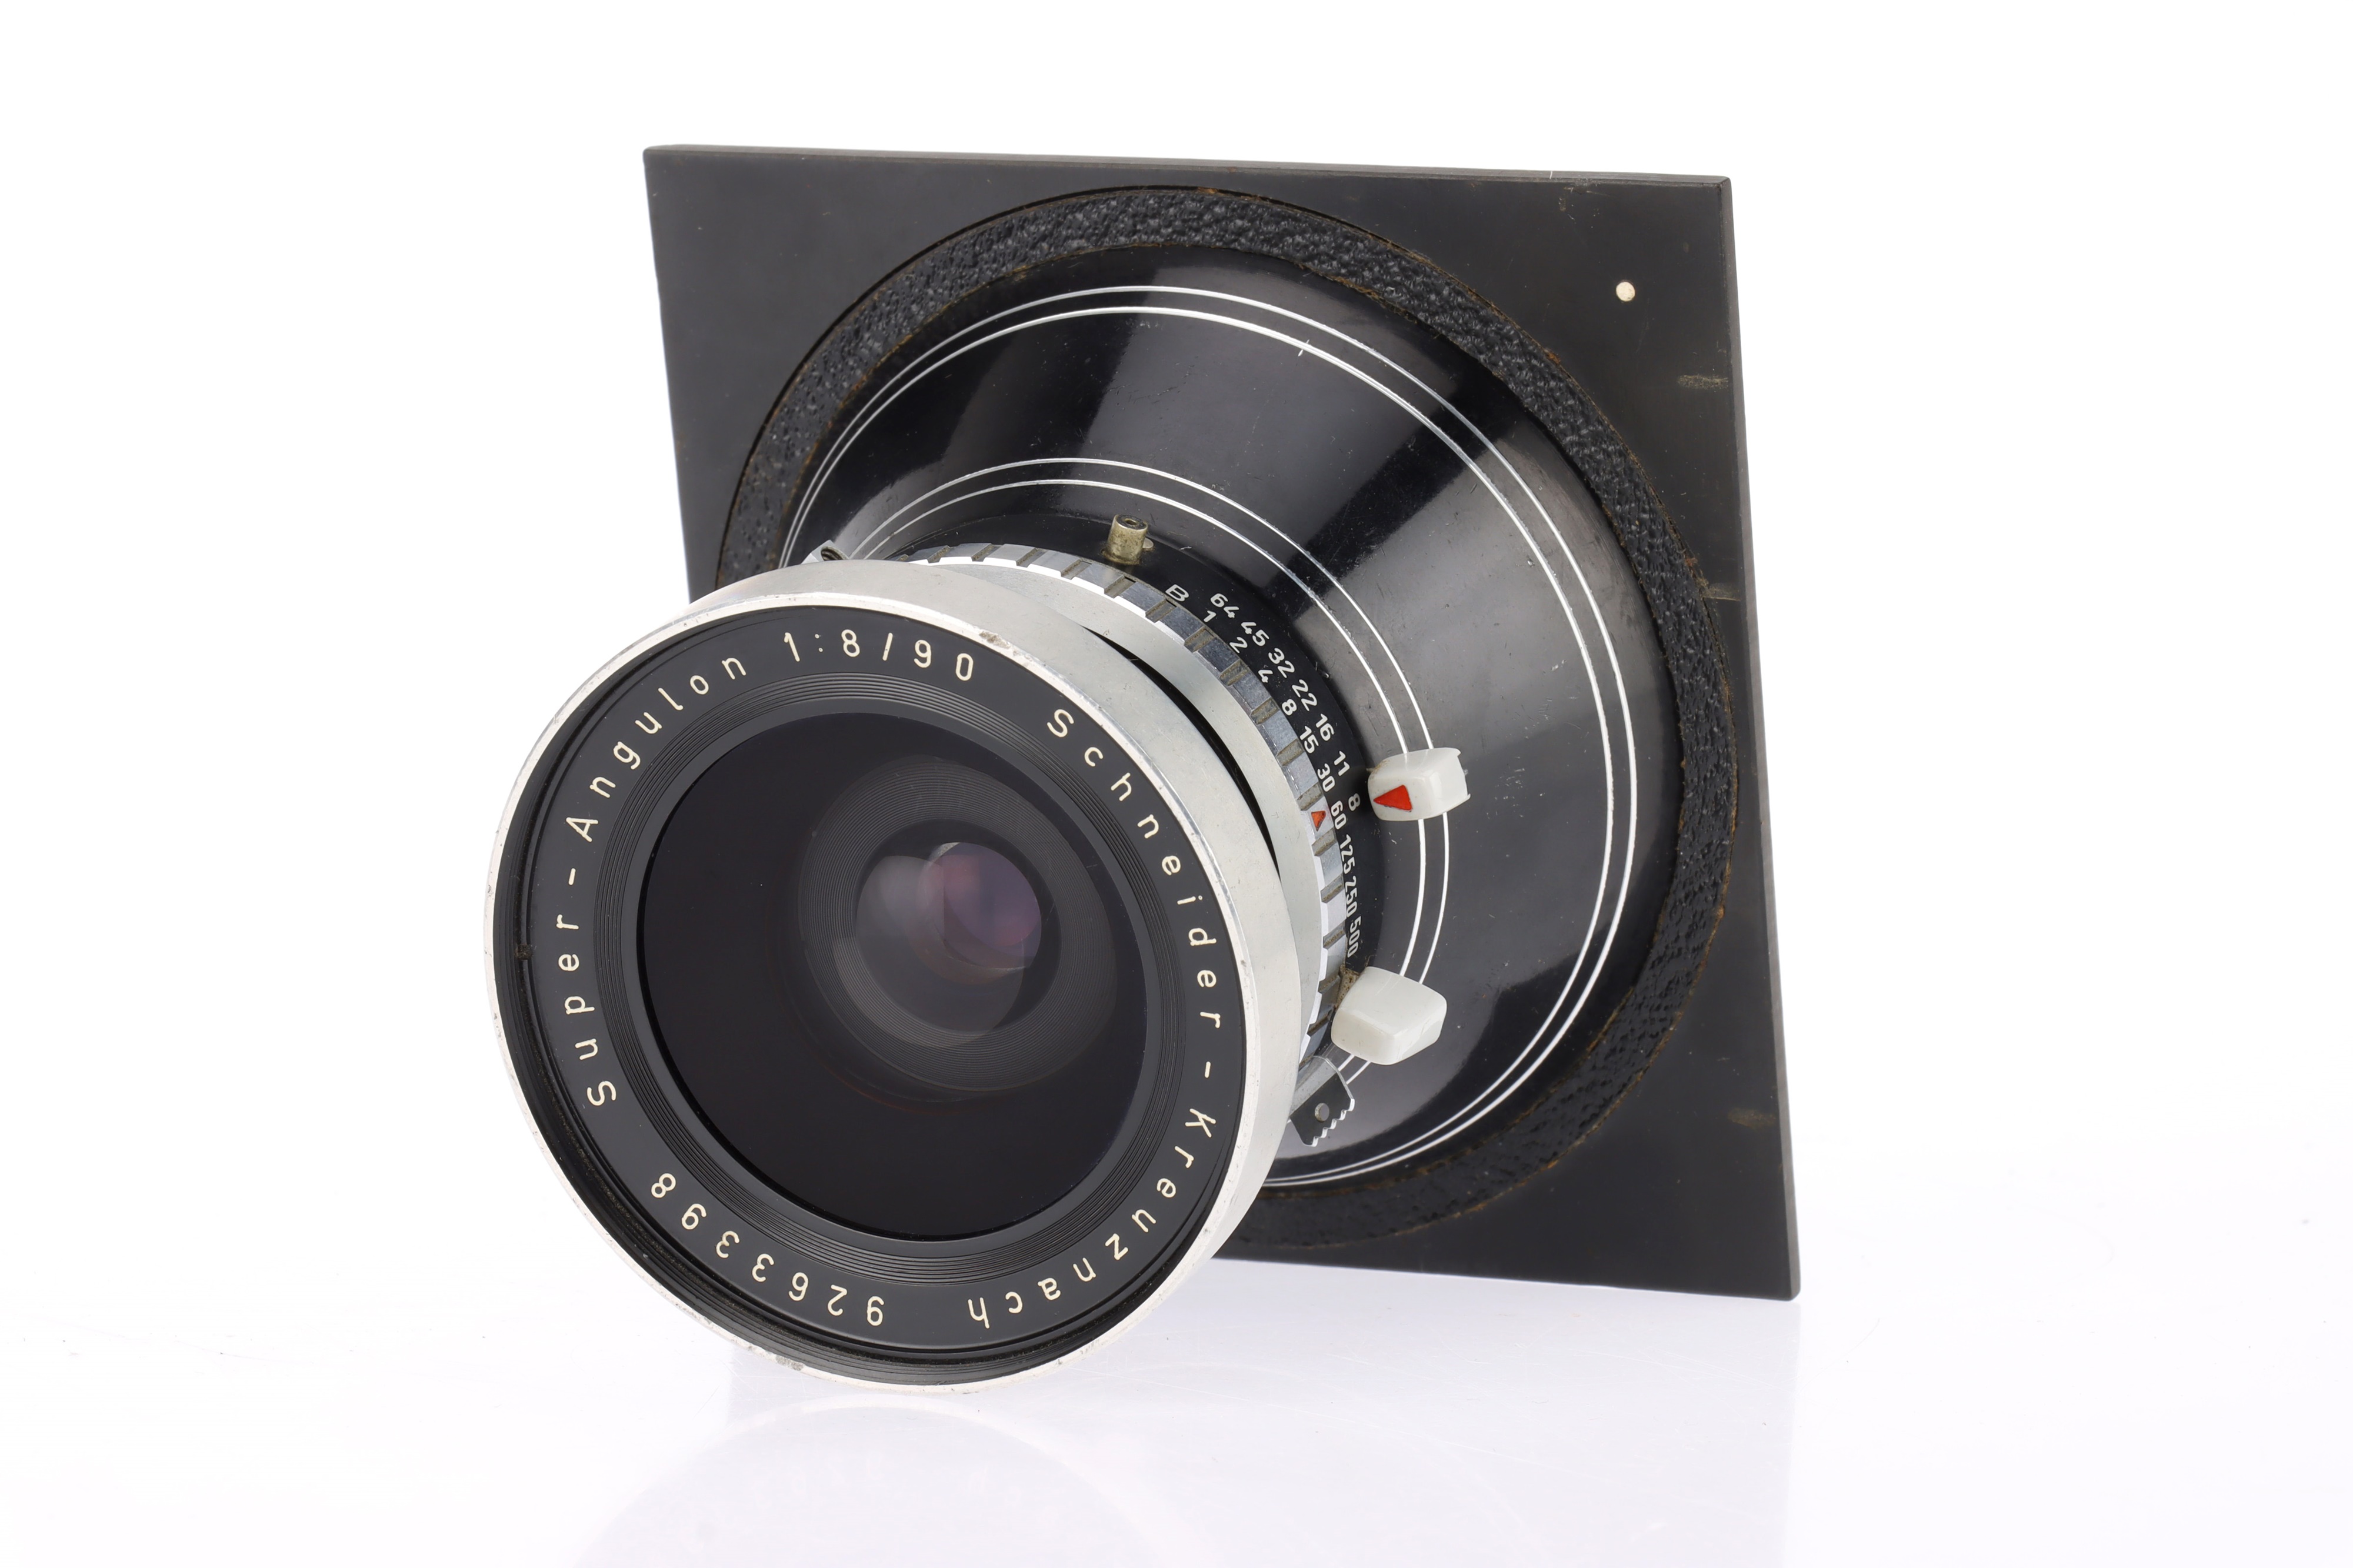 A Schneider-Kreuznach Super-Angulon f/8 90mm Camera Lens, - Image 2 of 3